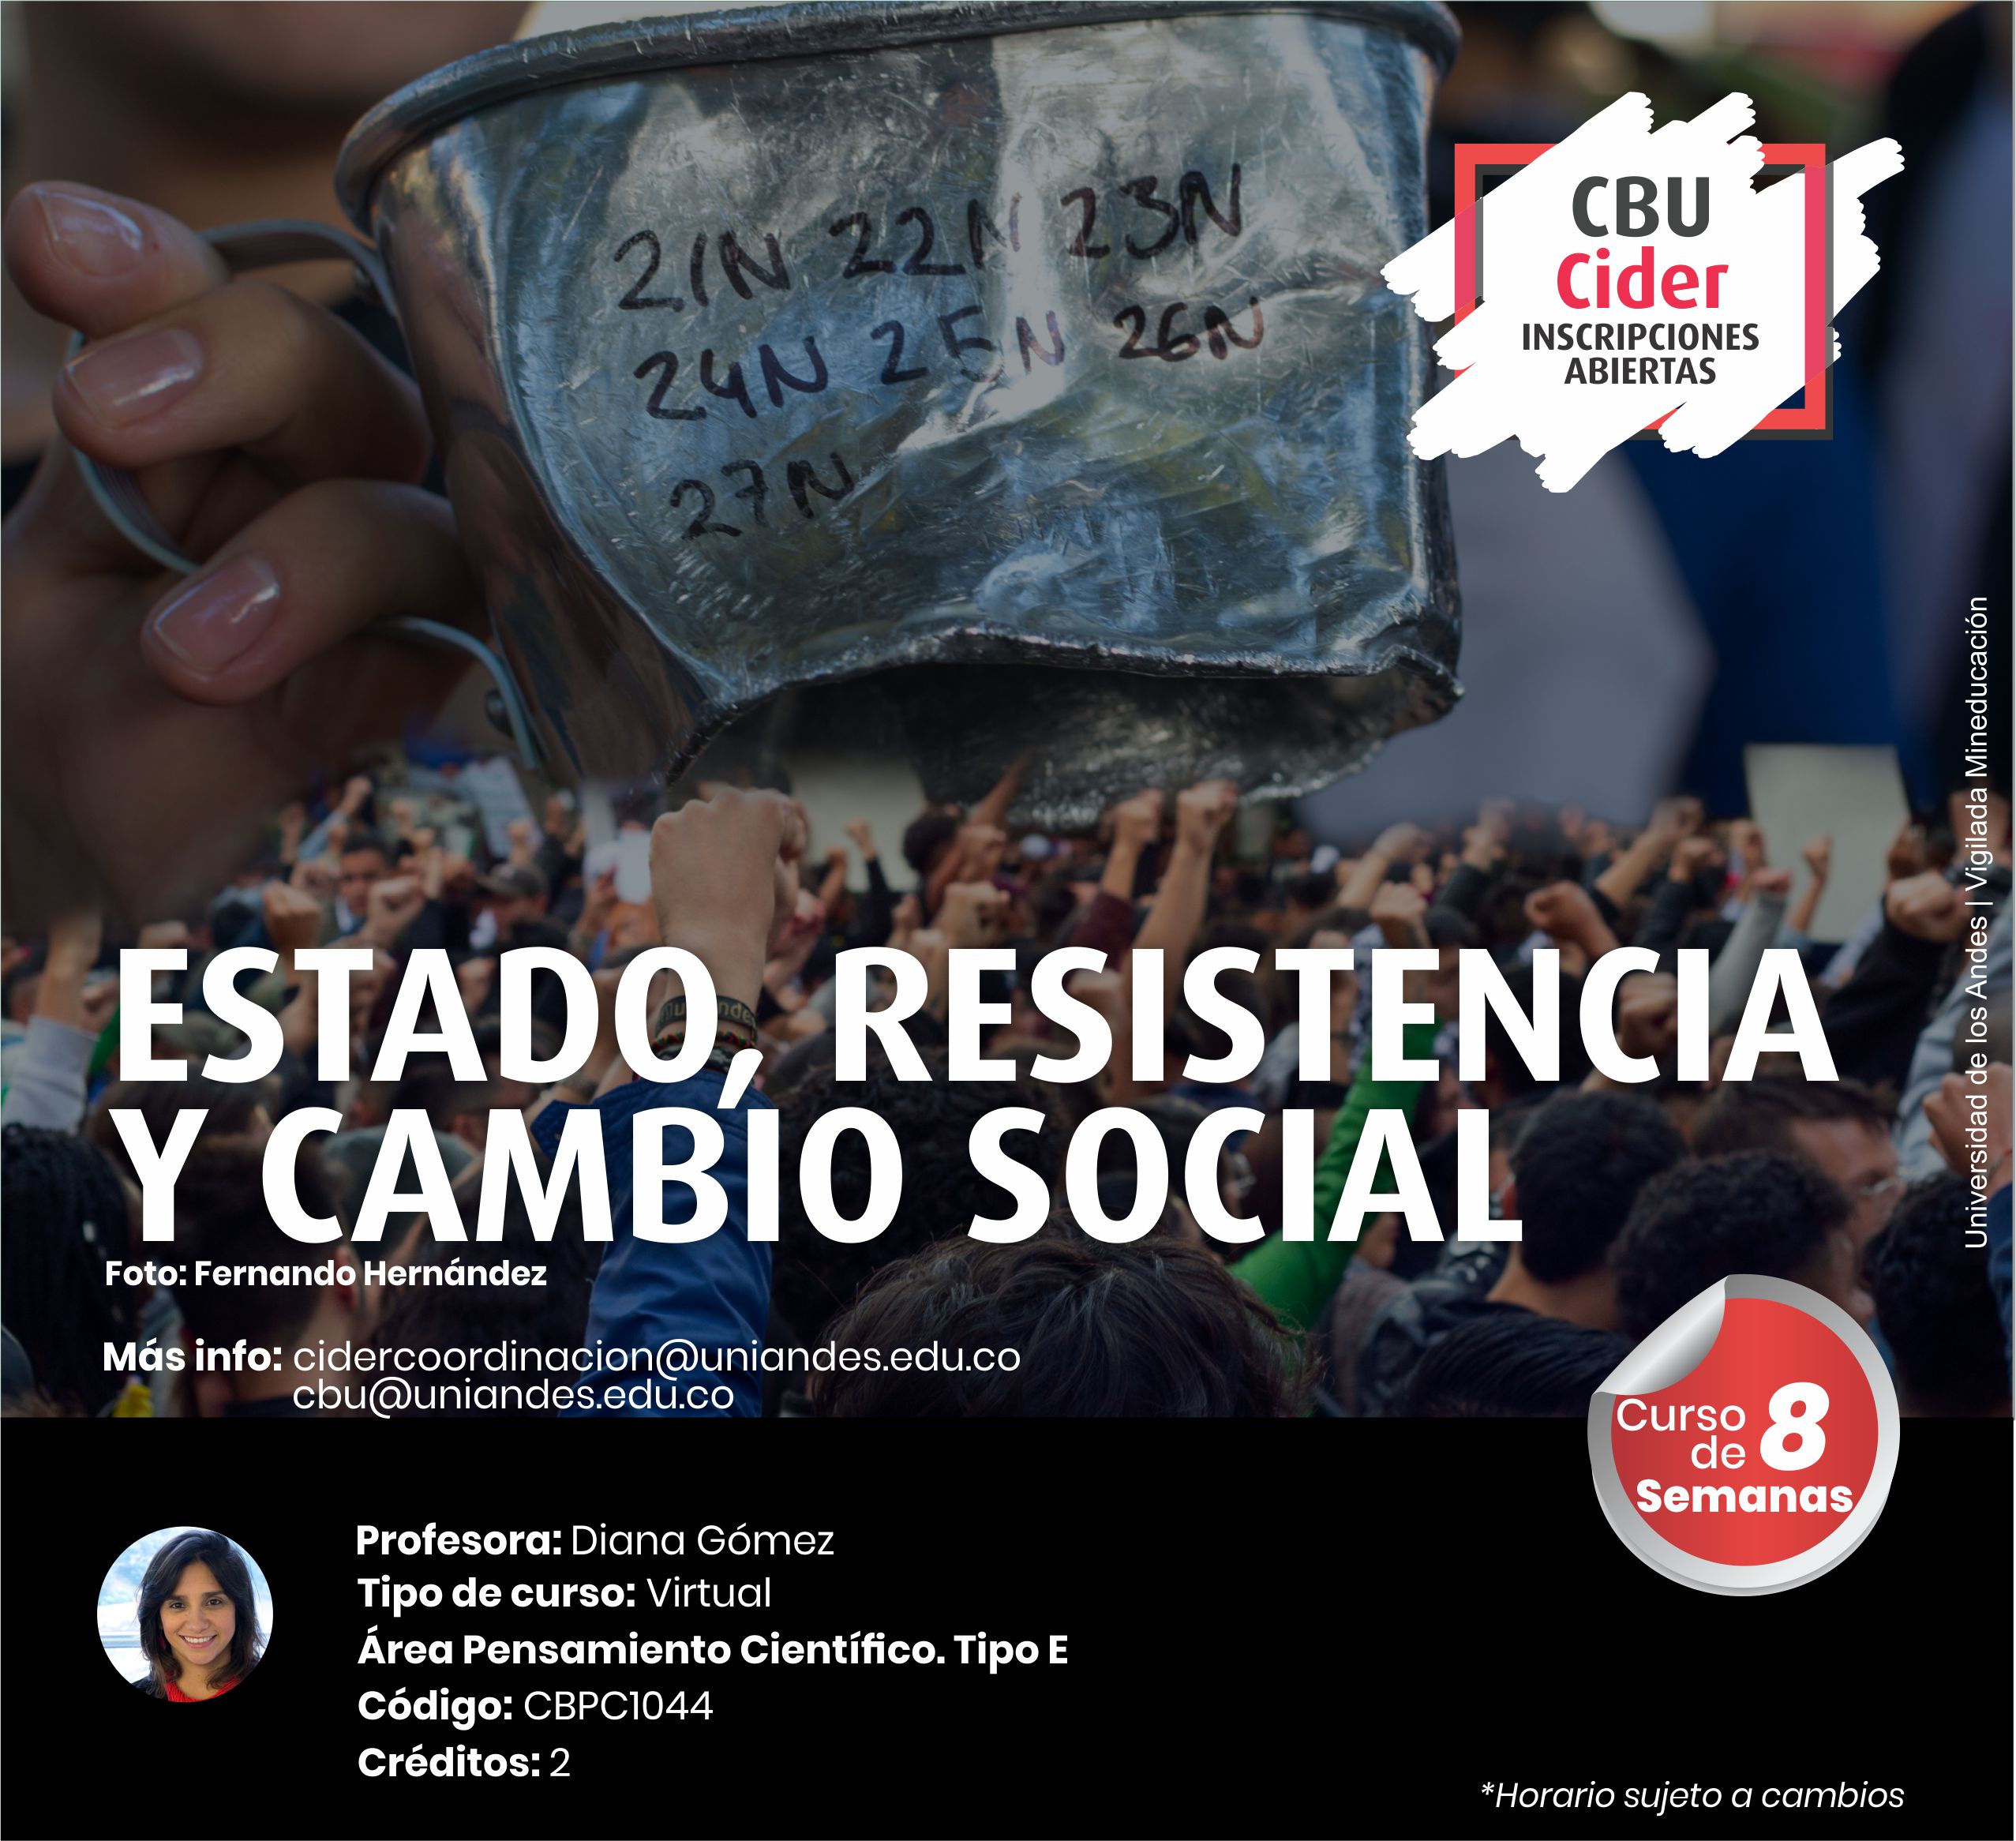 CBU: Estado, resistencia y cambio social - Cider | Uniandes